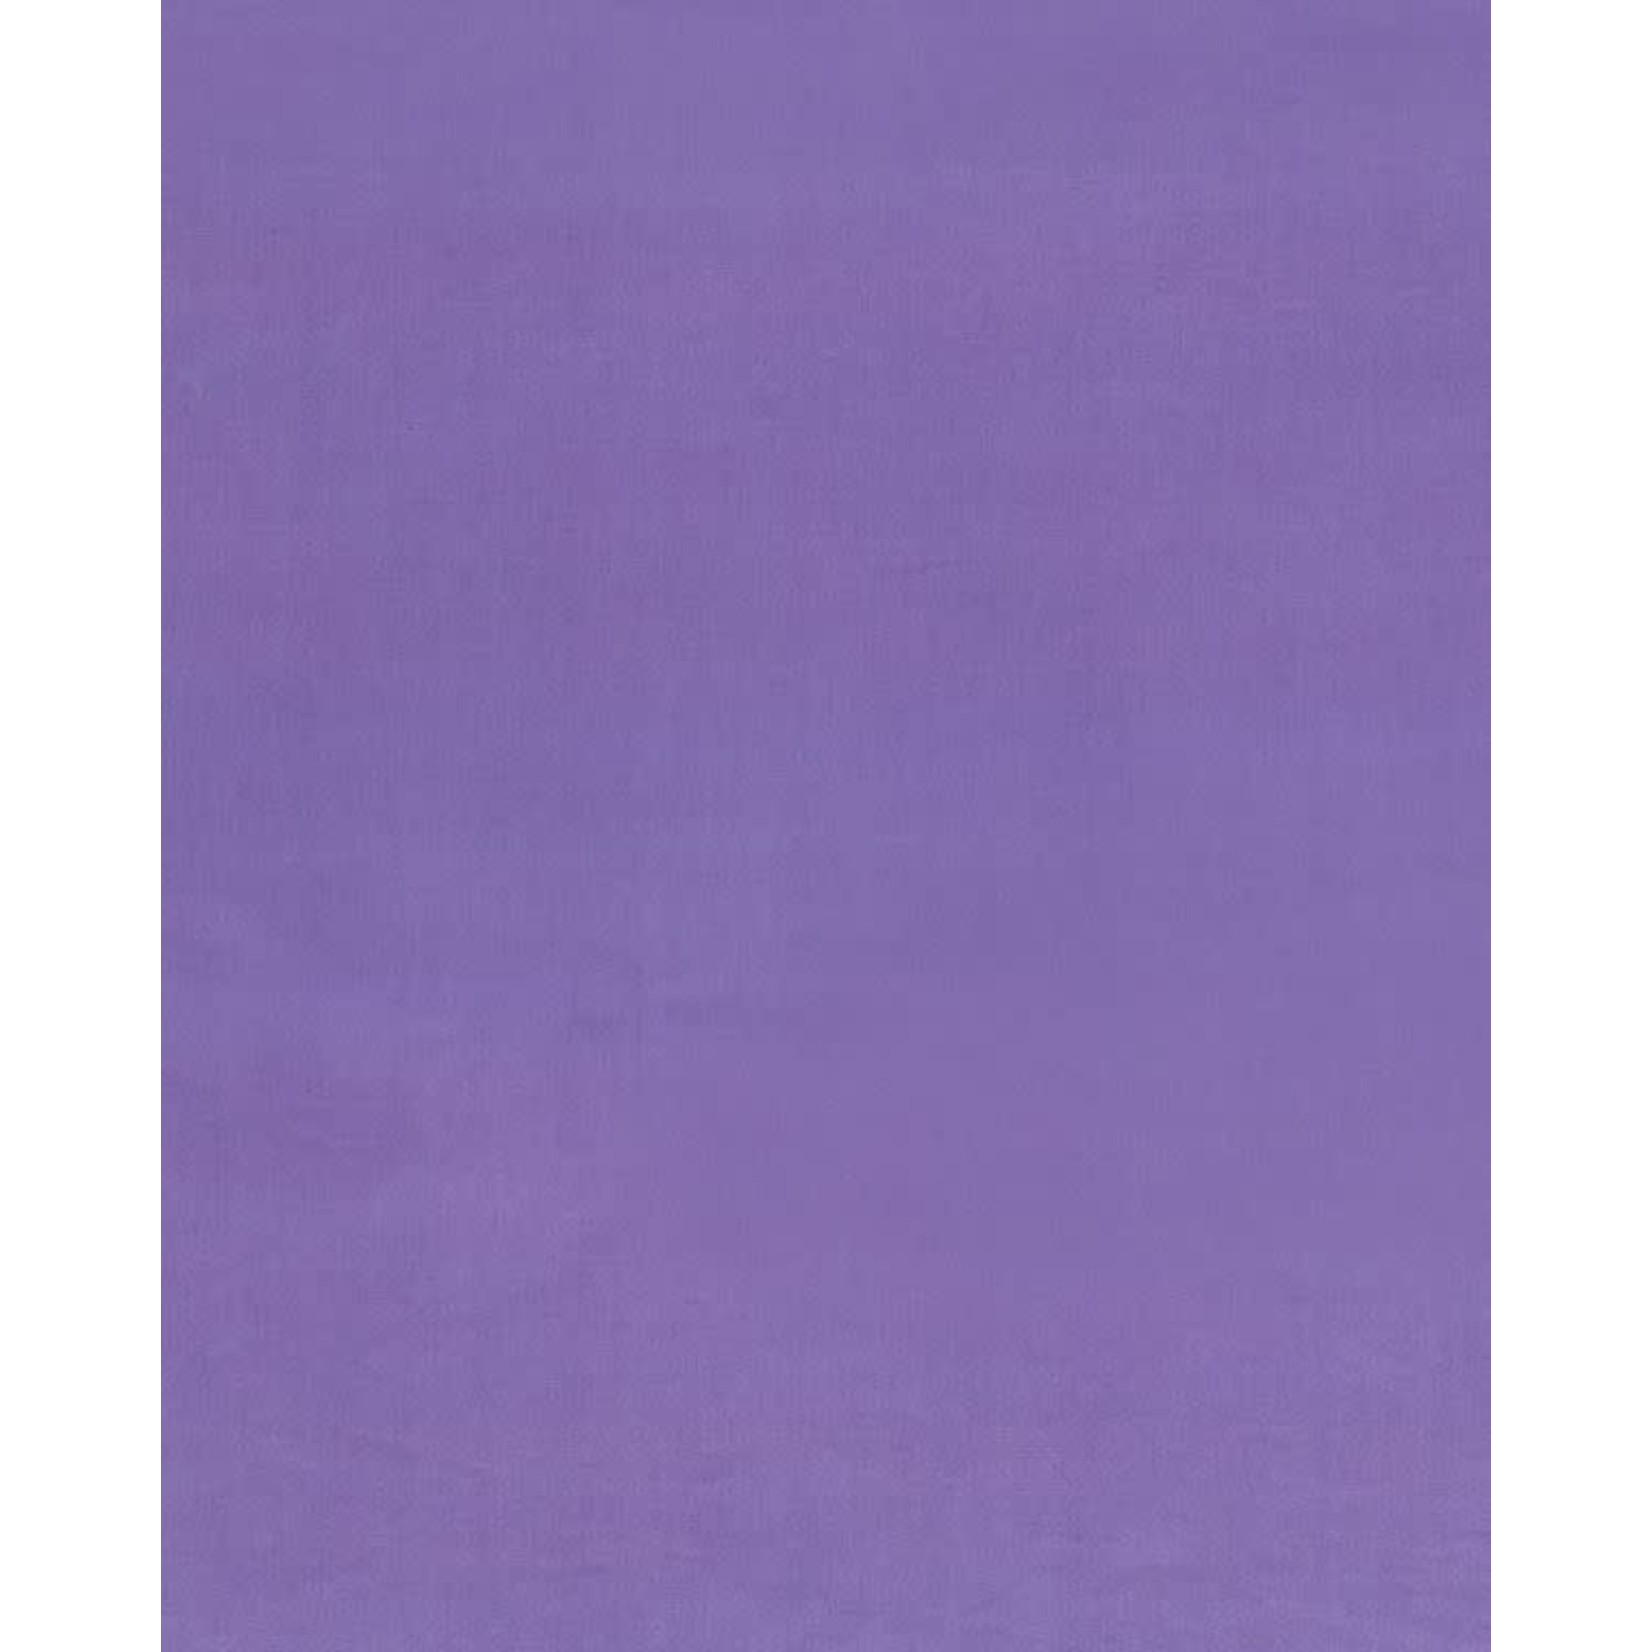 Wilmington Prints WP Solids, Lavender 0116 $0.20 per cm or $20/m